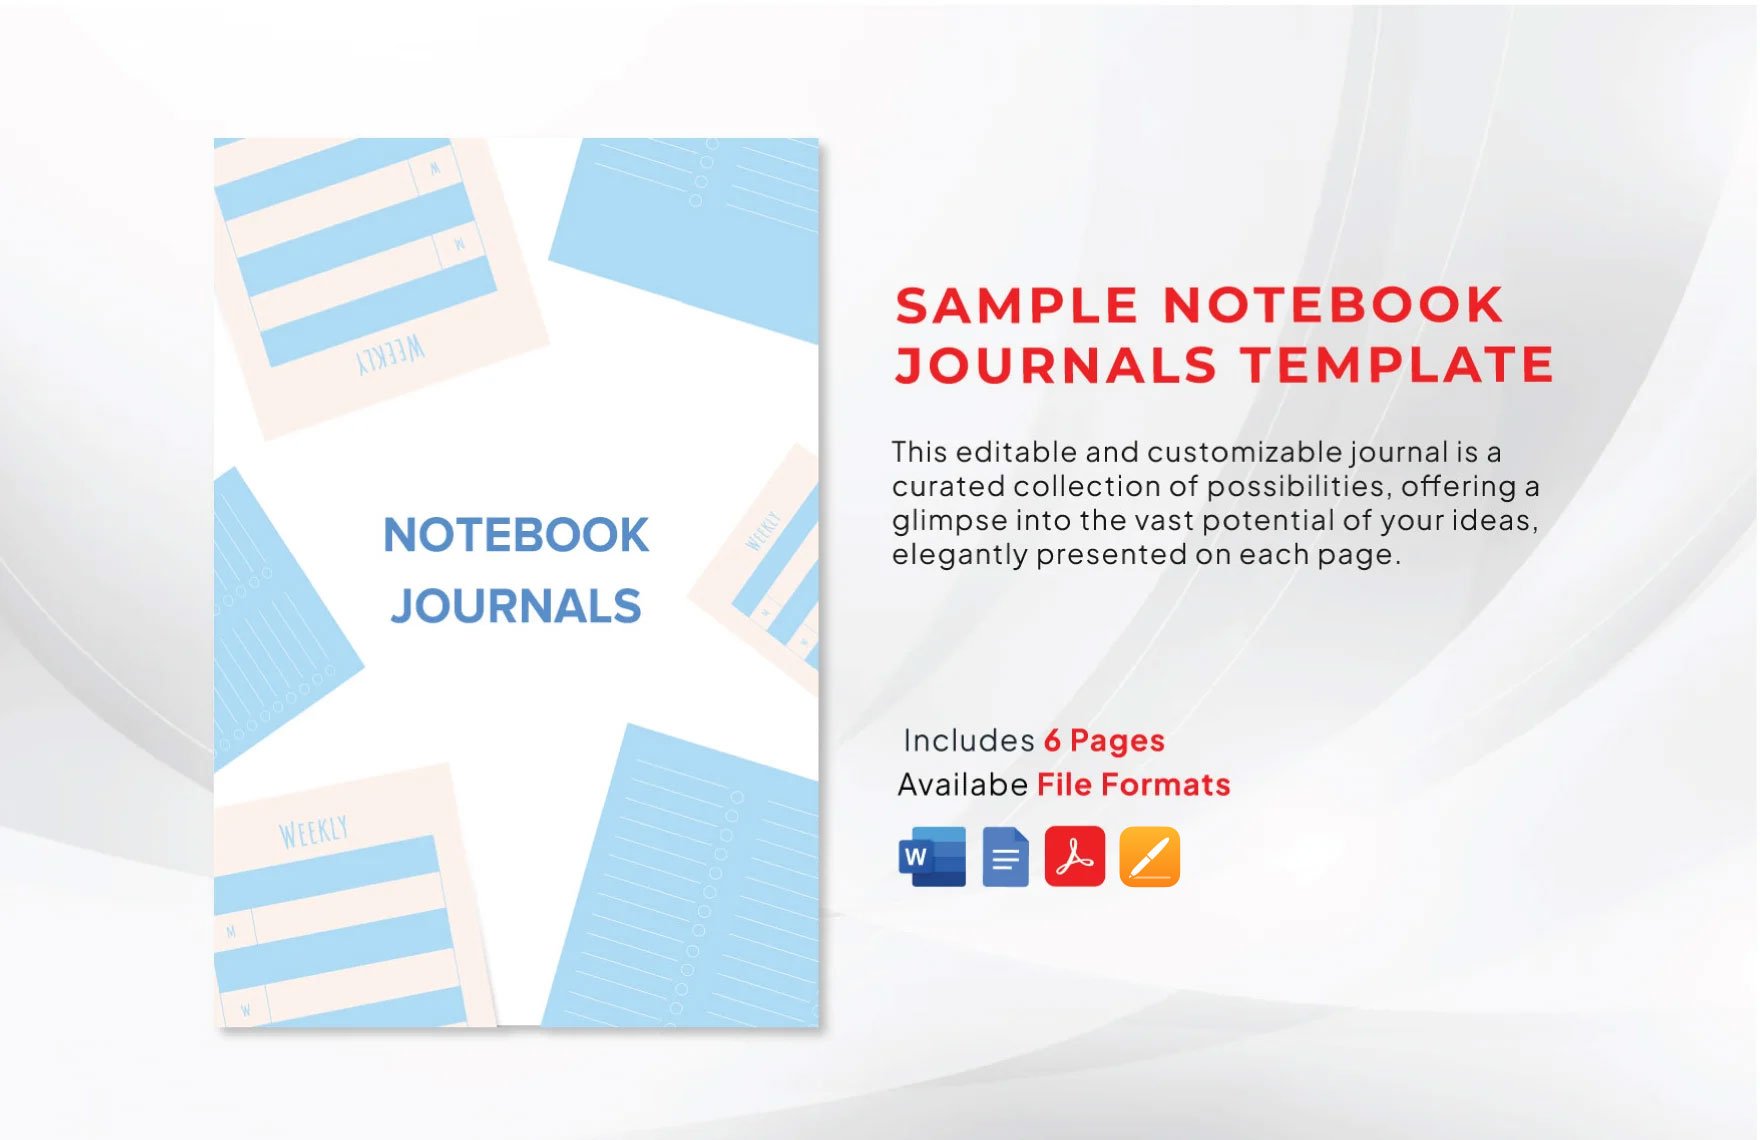 Sample Notebook Journals Template